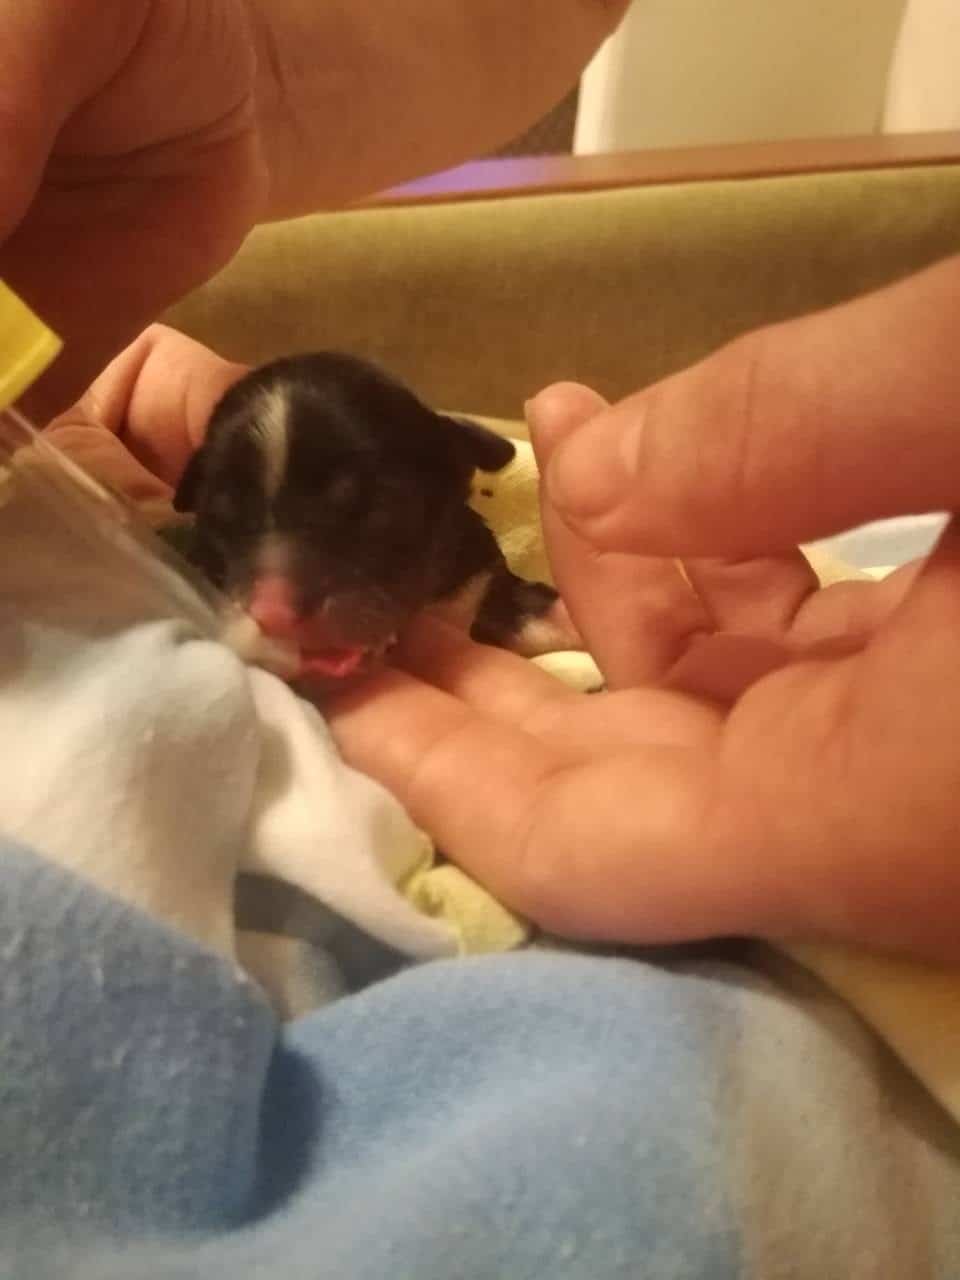 новорожденный щенок